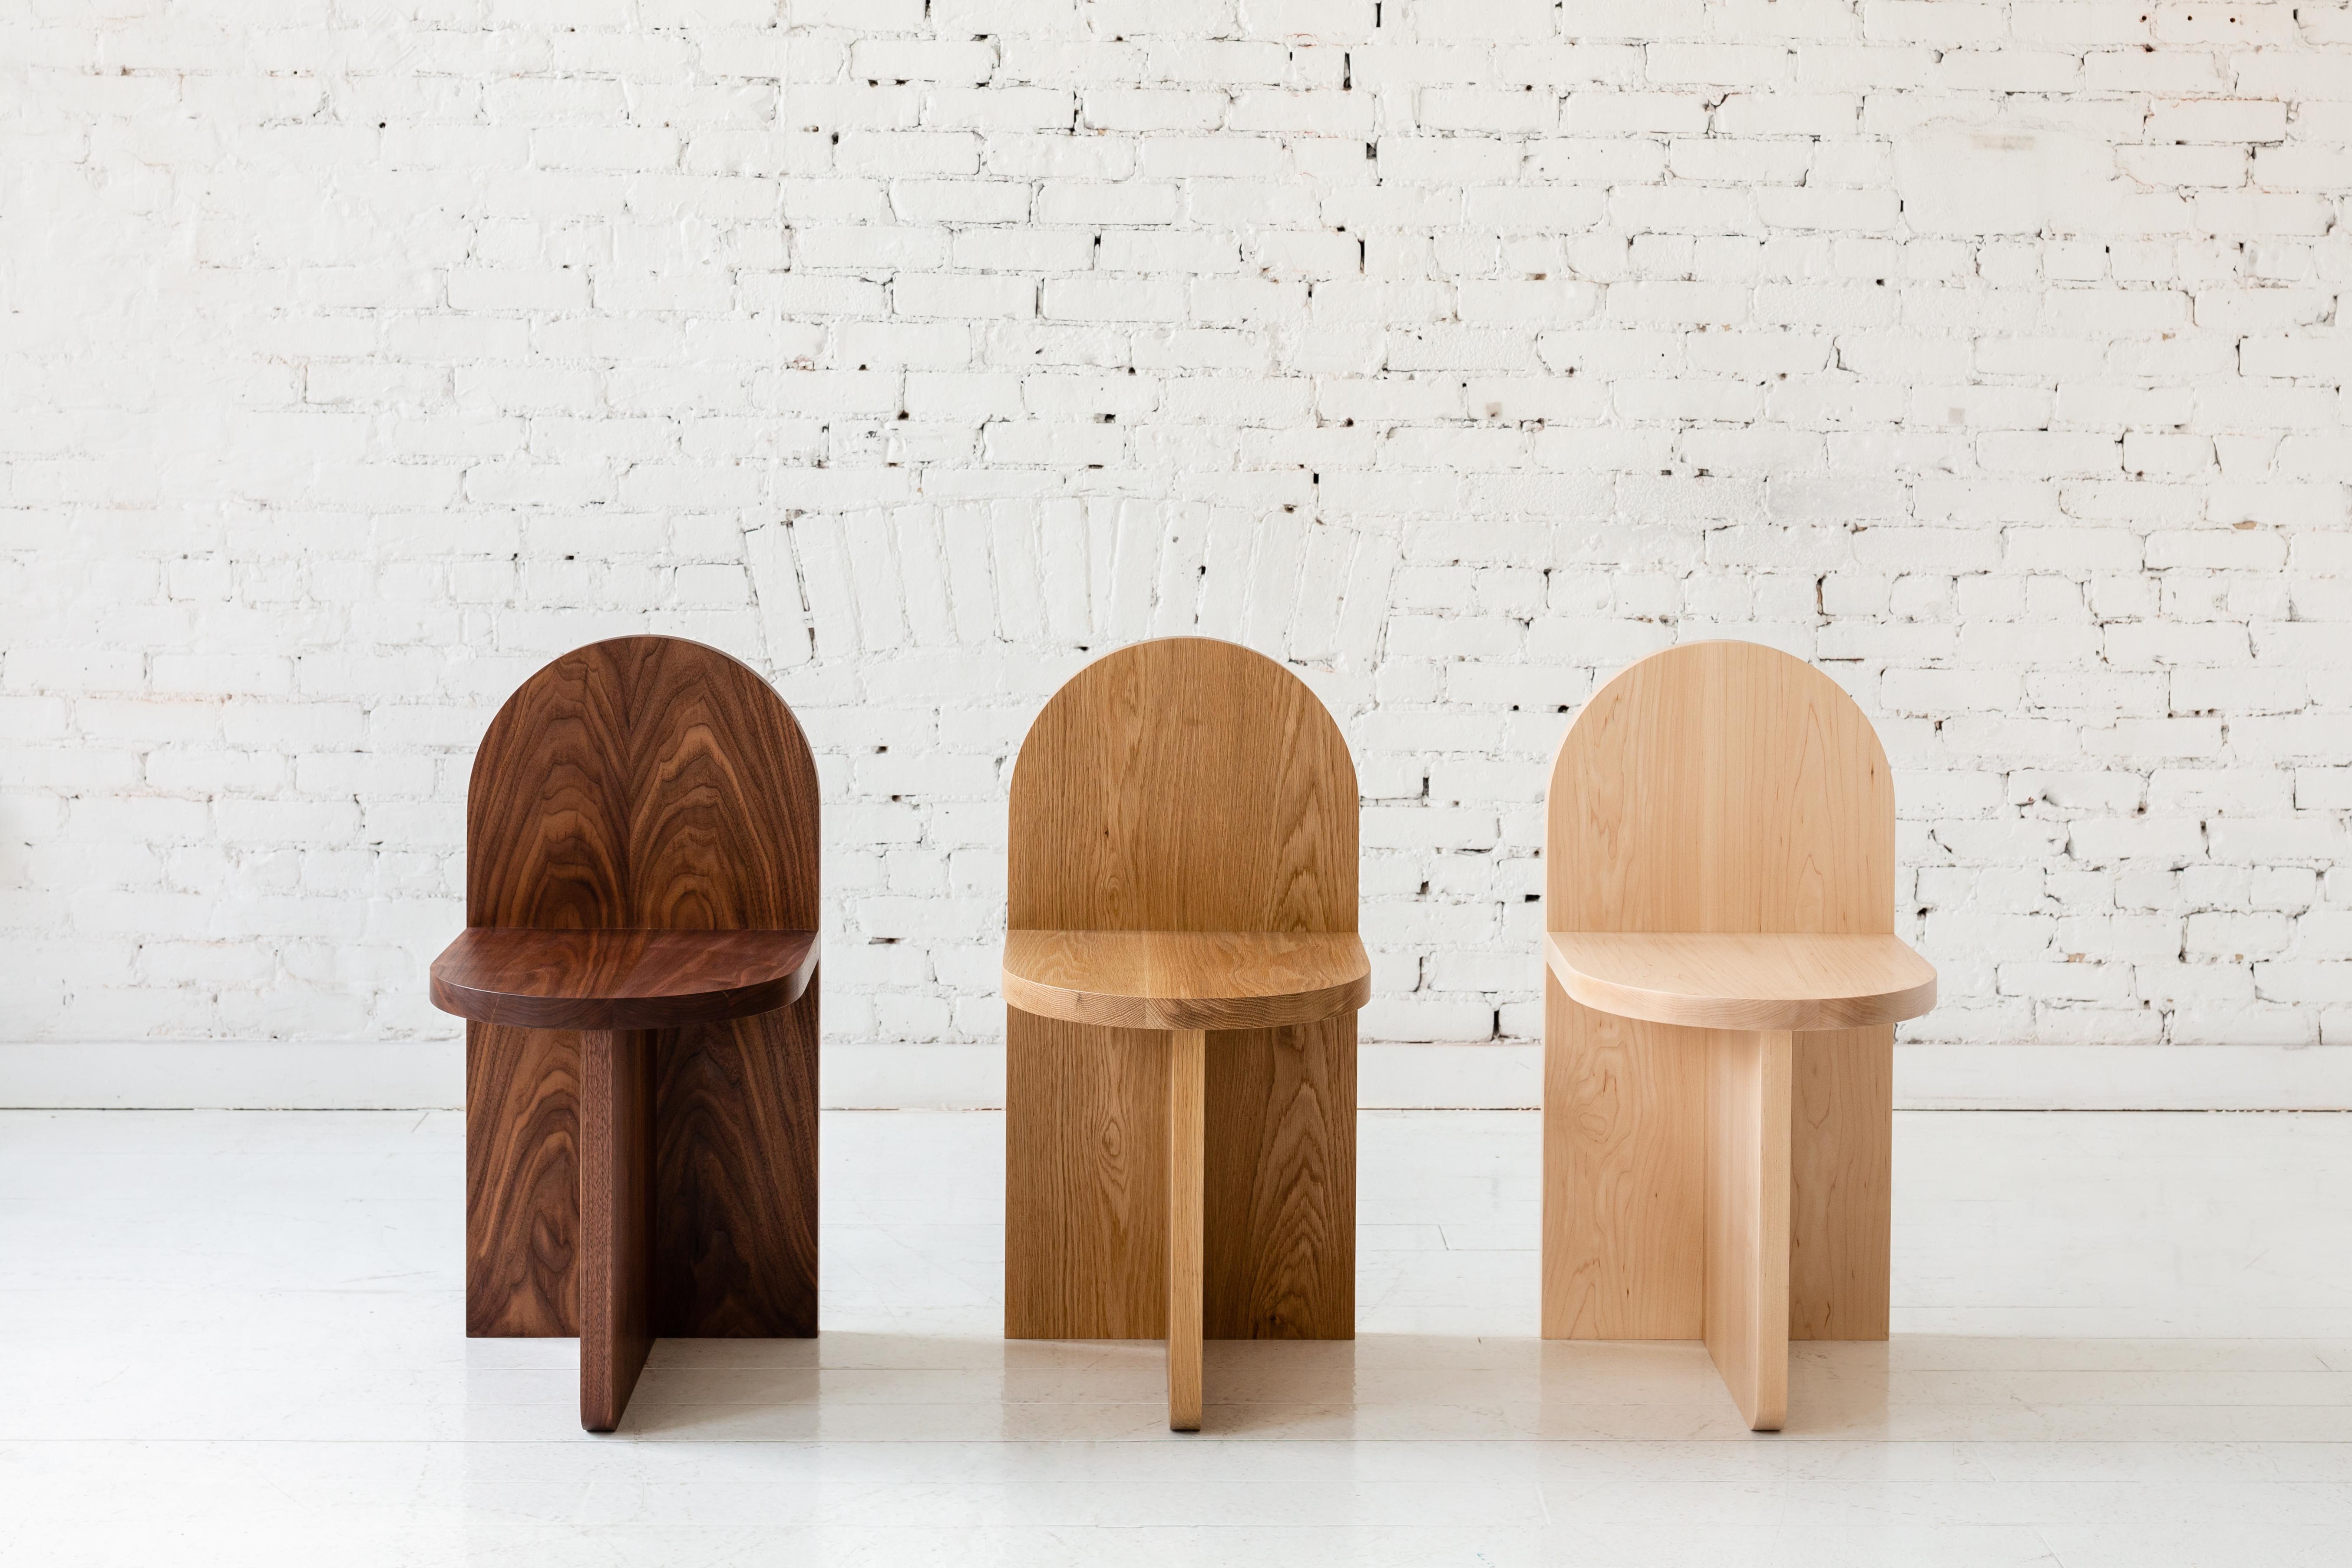 Cette chaise d'appoint minimale est composée de trois plans qui se croisent, le dossier ressemblant à une forme traditionnelle de pierre tombale. 

Disponible dans une variété de bois. Présenté en noyer, chêne blanc et frêne. Également disponible en